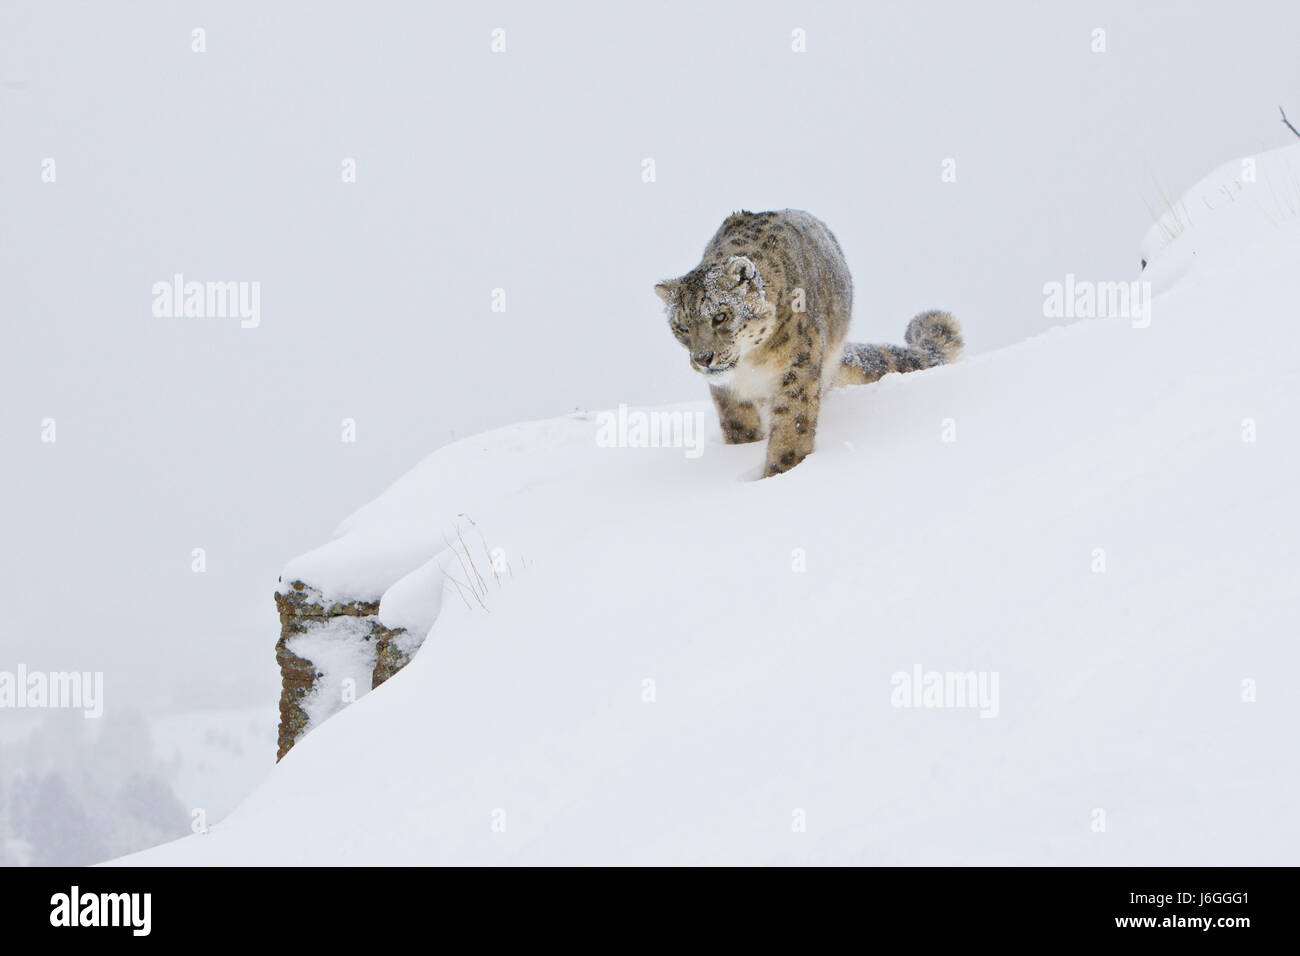 L'once ou léopard des neiges (Panthera uncia) Banque D'Images